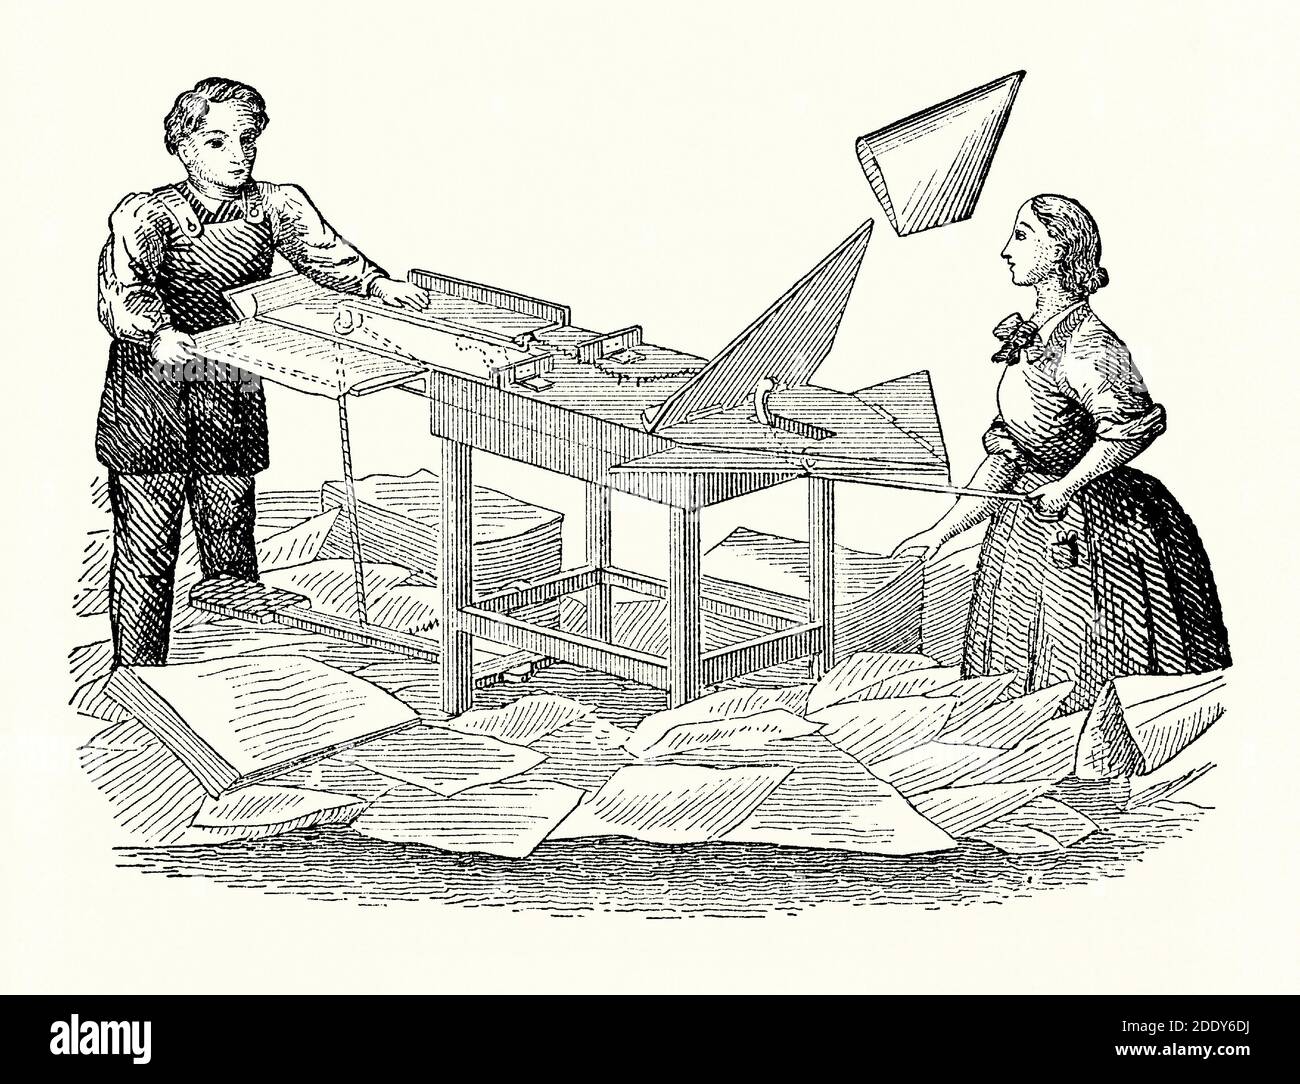 Eine alte Gravur von Papierbeutelmaschine. Es ist aus einem viktorianischen Maschinenbaubuch der 1880er Jahre. Diese handbetriebene Maschine könnte quadratische und konische Säcke machen. Sobald das Papier auf dem Tisch gefaltet und geklebt wurde, schickte ein Hebel ‘fliegend’, um gesammelt zu werden. Ein Großteil der manuellen Arbeit im 19. Jahrhundert war hart und gefährlich; im Vergleich dazu scheint diese Art von Arbeit Spaß zu machen! Und es scheint eine Arbeit zu sein, an der sowohl Männer als auch Frauen gemeinsam beteiligt waren. Papier war ein Luxus, nur für die Reichen verwendet. 1852 erfand der Amerikaner Francis Wolle eine mechanisierte Papiertütenmaschine, die Taschen für den täglichen Gebrauch machte. Stockfoto